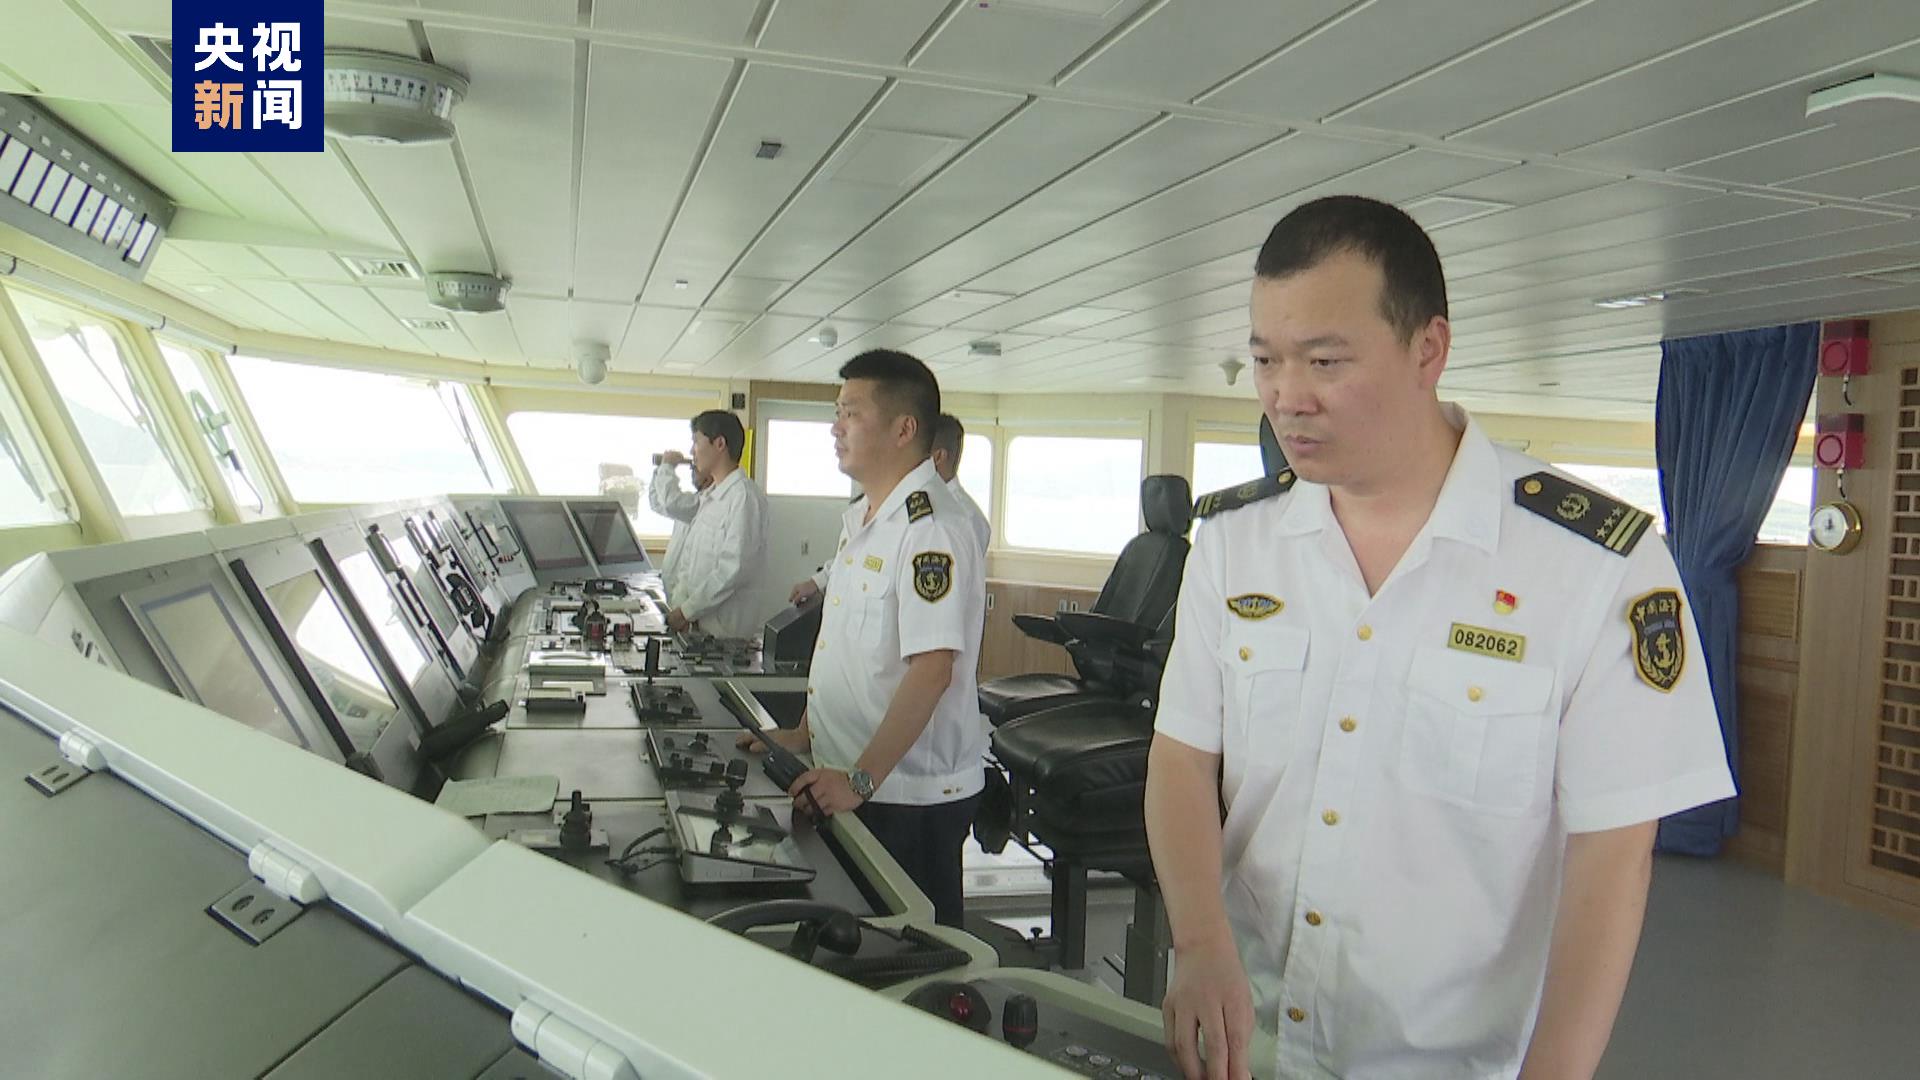 台湾海峡大型巡航救助船“海巡06”轮首次巡航执法活动7月31日启动